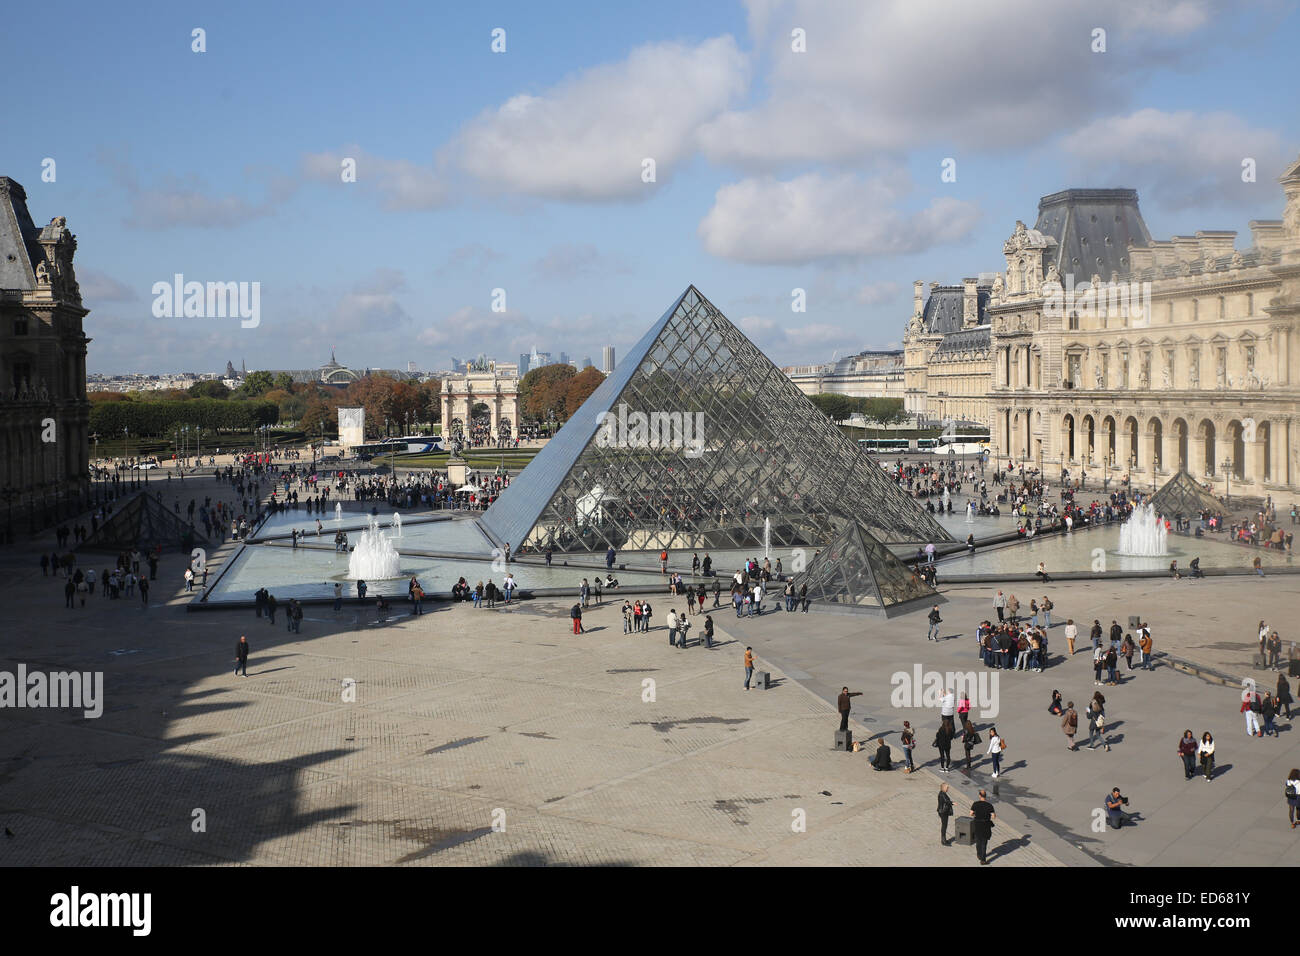 La Piramide del Louvre architettura di vetro giornata soleggiata esterno Foto Stock